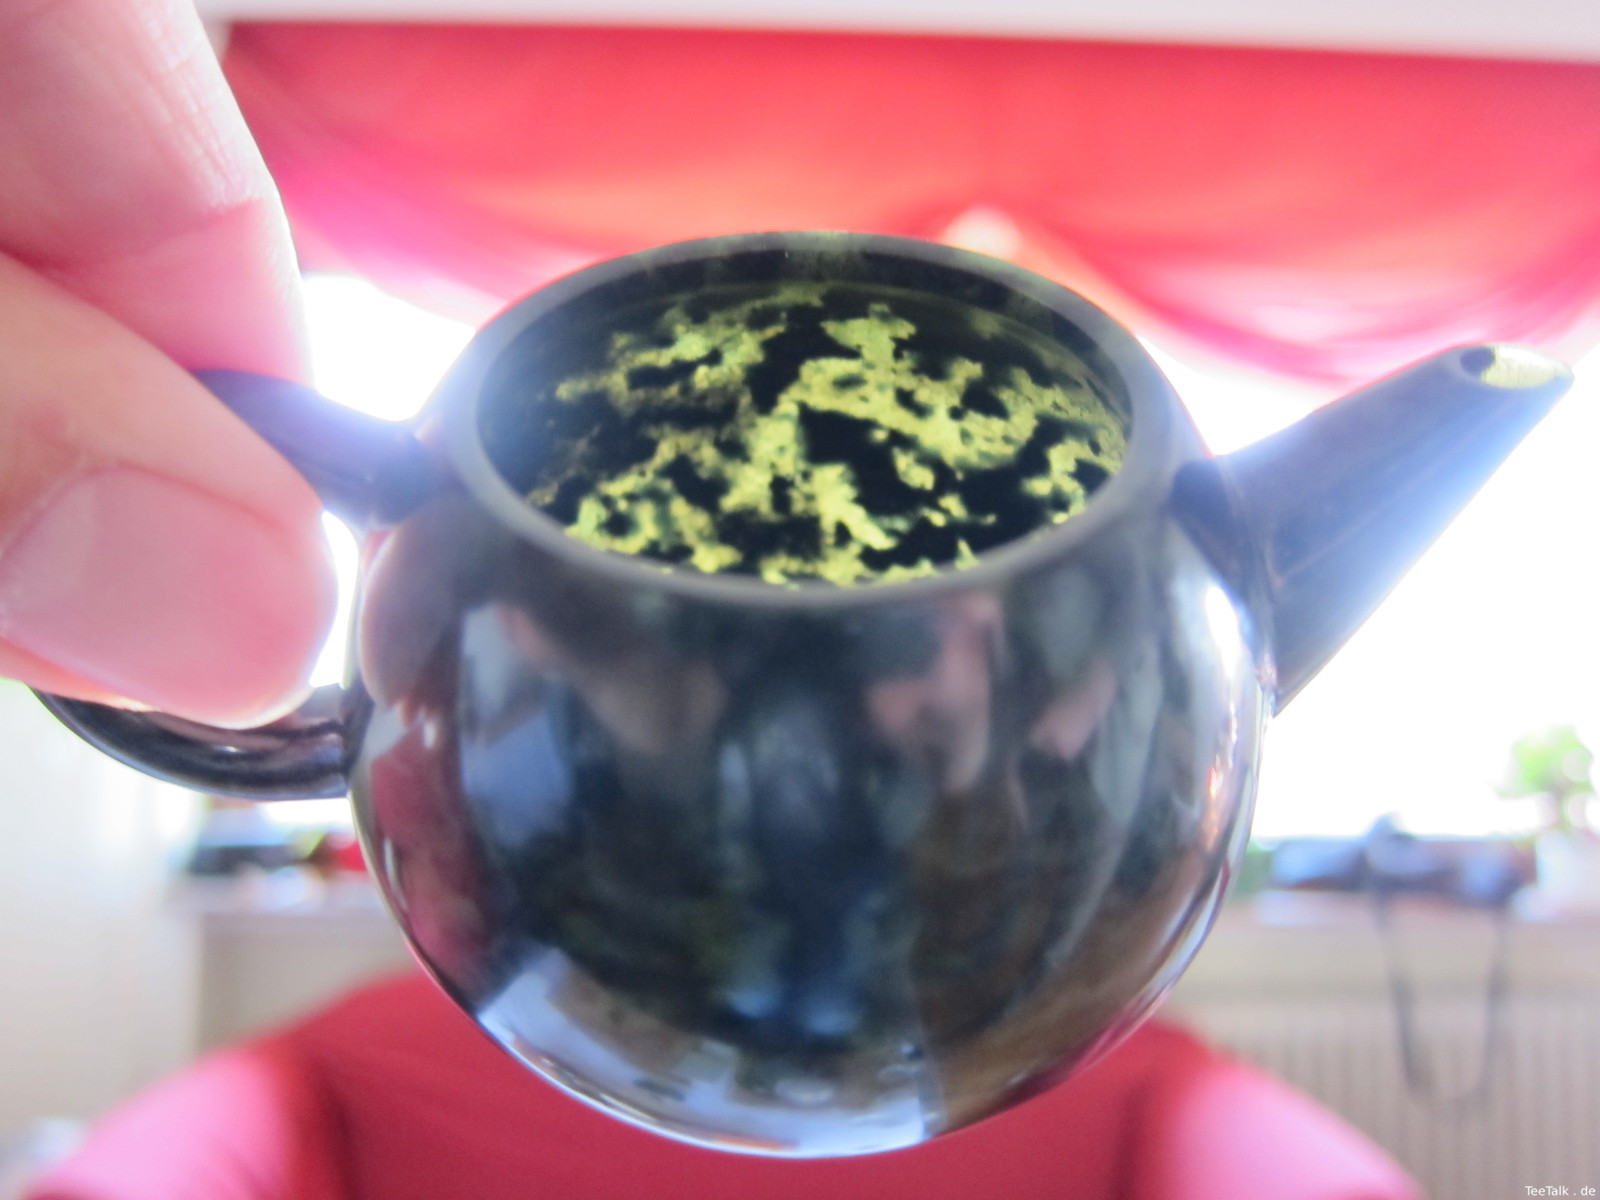 Jadekanne auf der Teezui 4